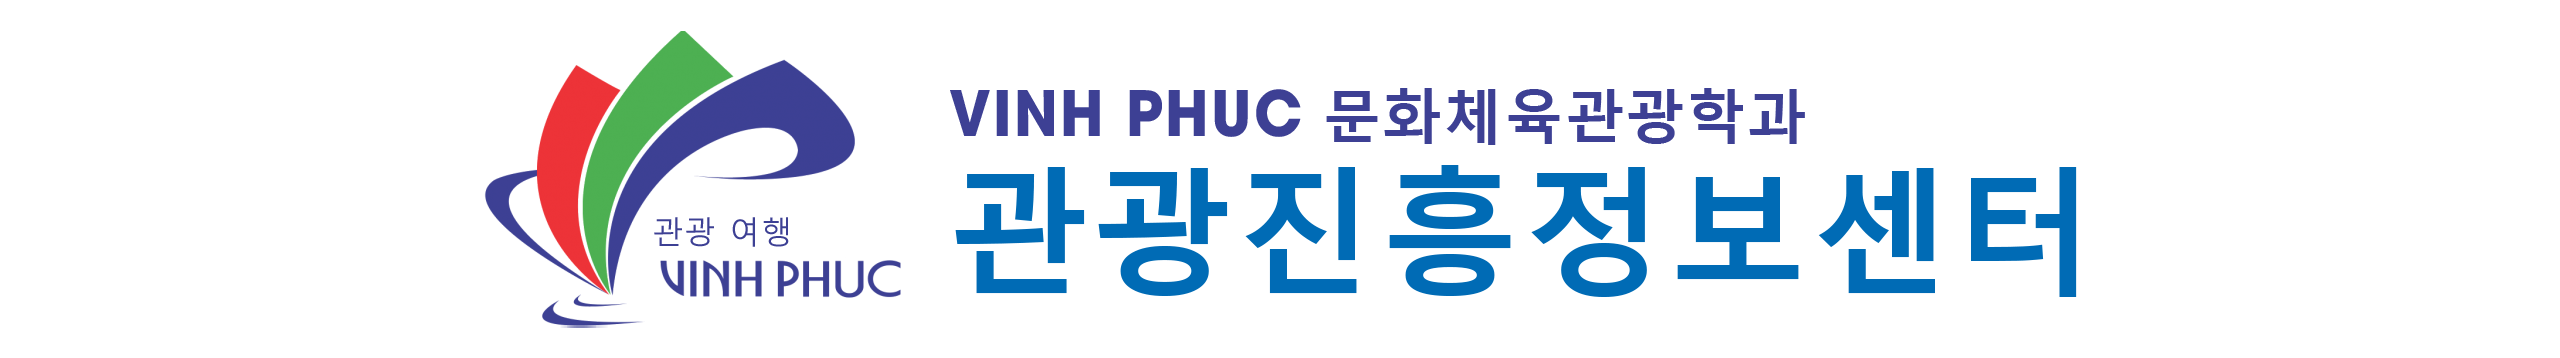 Vinh Phuc Tourism - VINH PHUC TOURISM INFORMATION AND PROMOTION CENTER